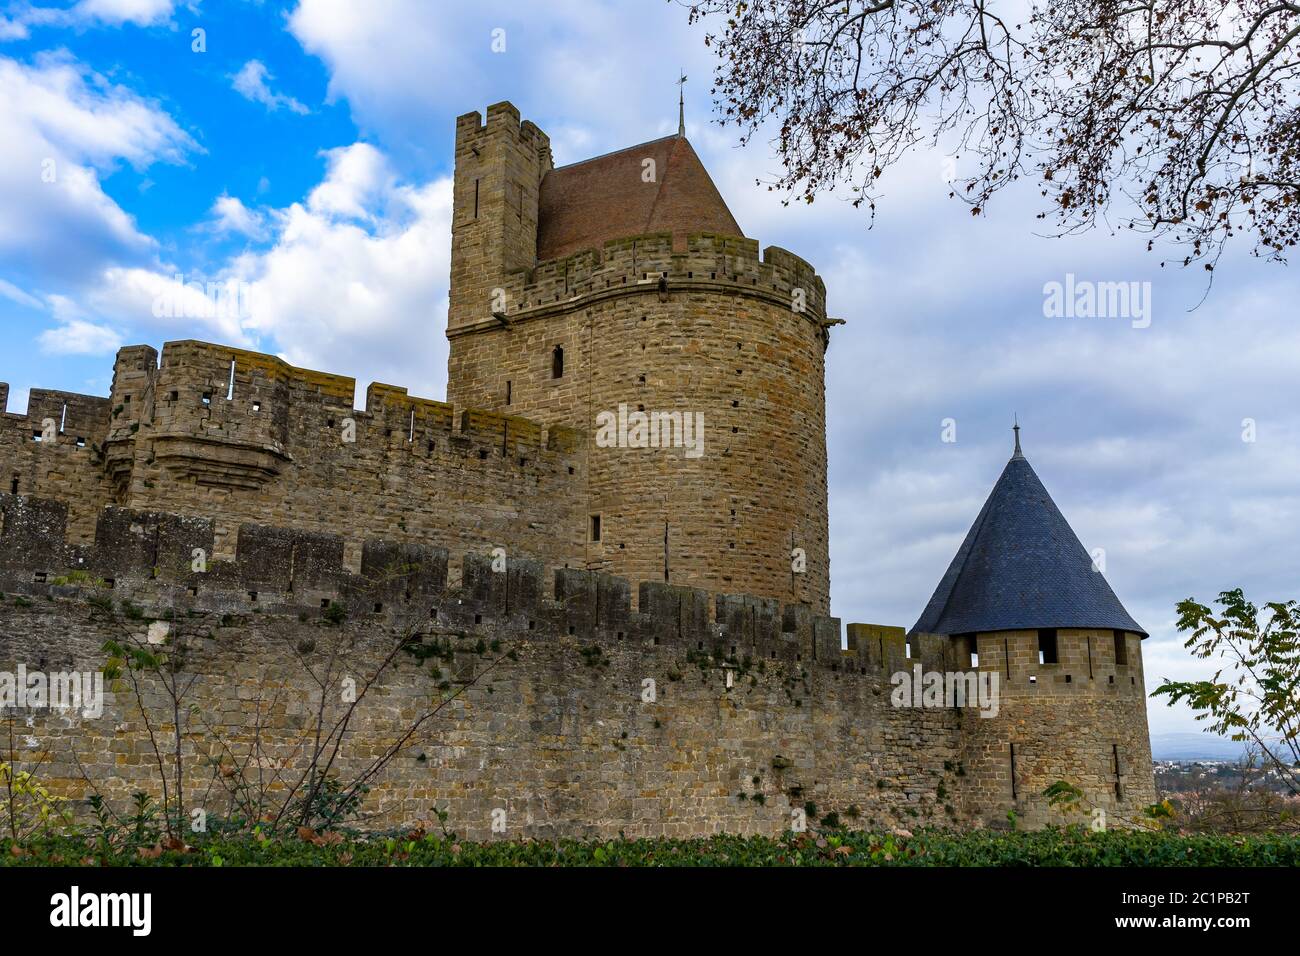 Cité médiévale fortifiée de Carcassonne en France. Banque D'Images